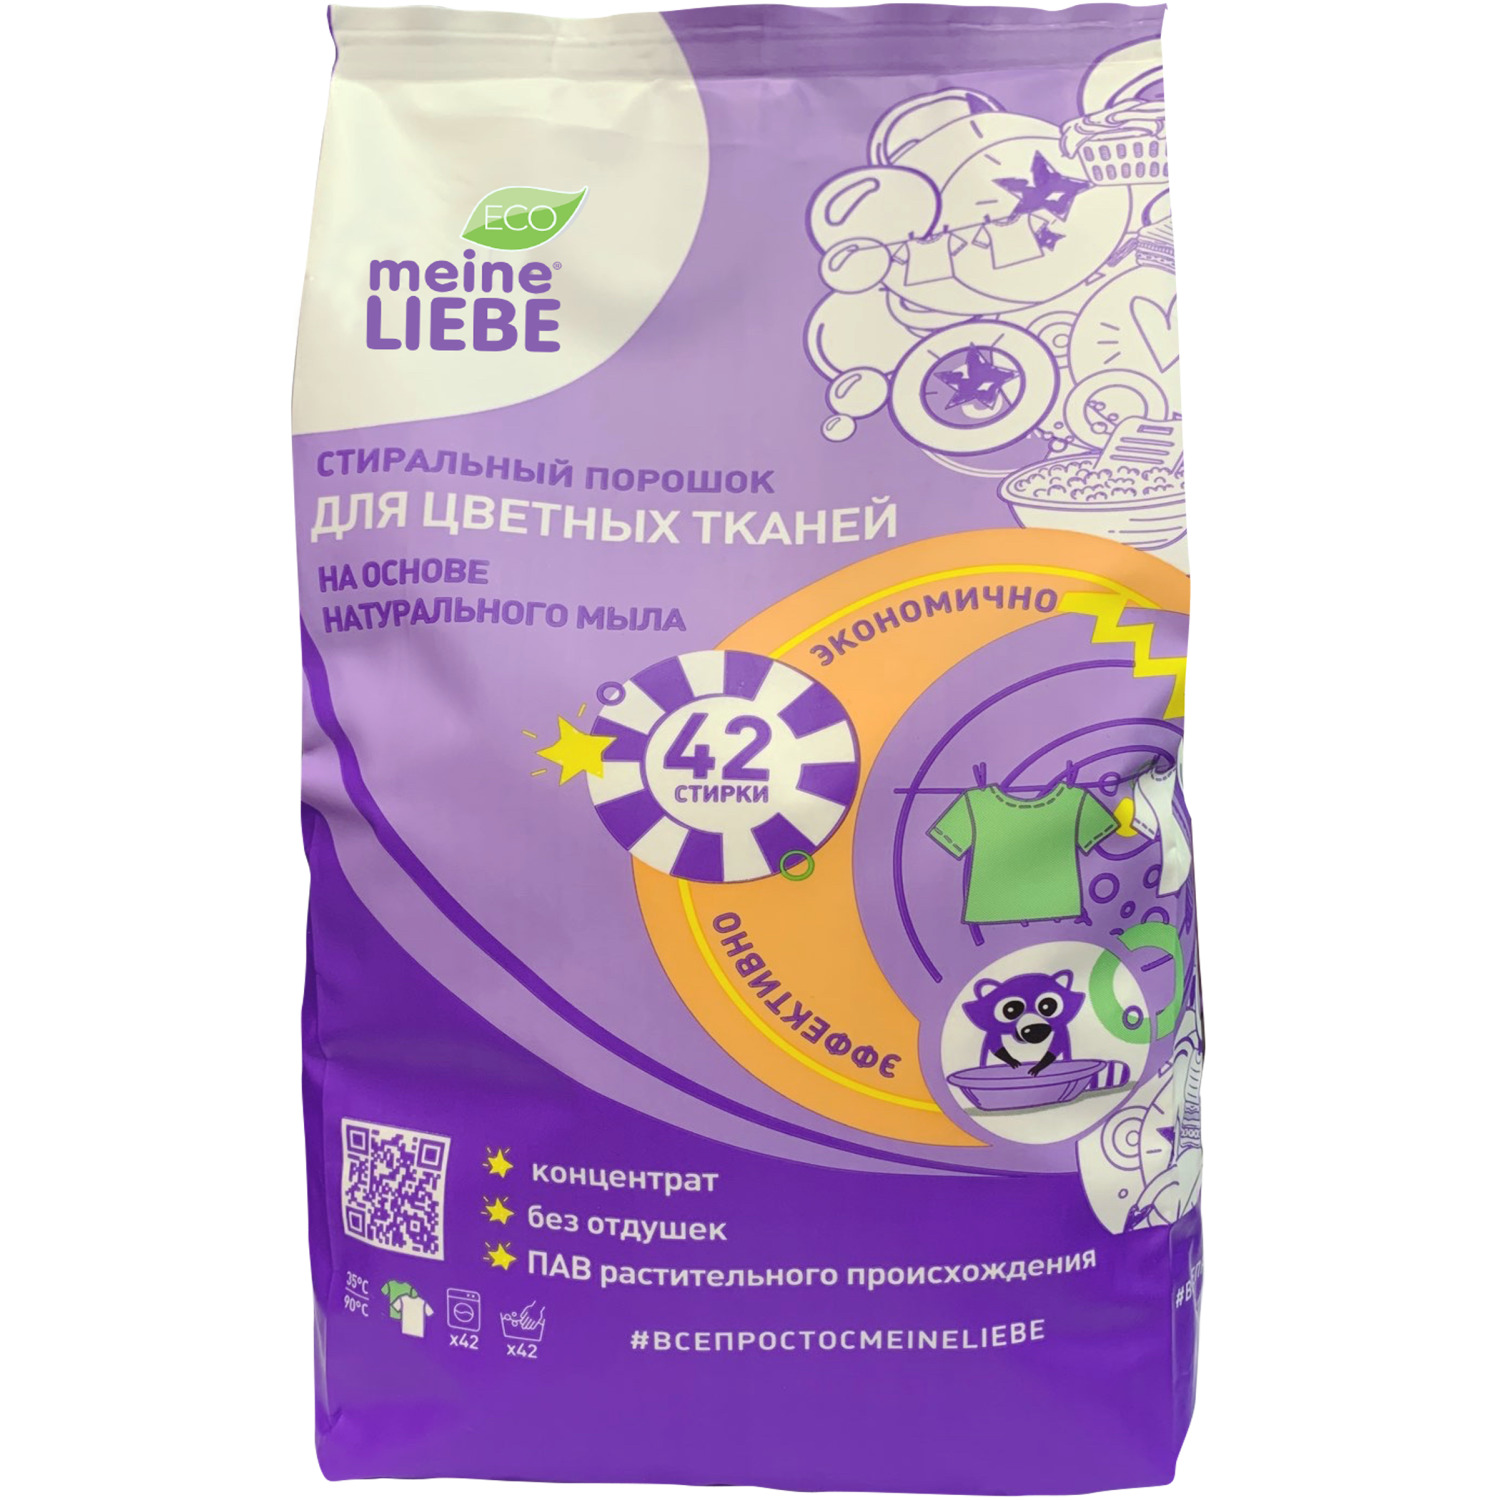 Порошок стиральный для цветных тканей Meine Liebe 1,5 кг экологичный стиральный порошок для цветных тканей meine liebe без отдушек 1500 гр